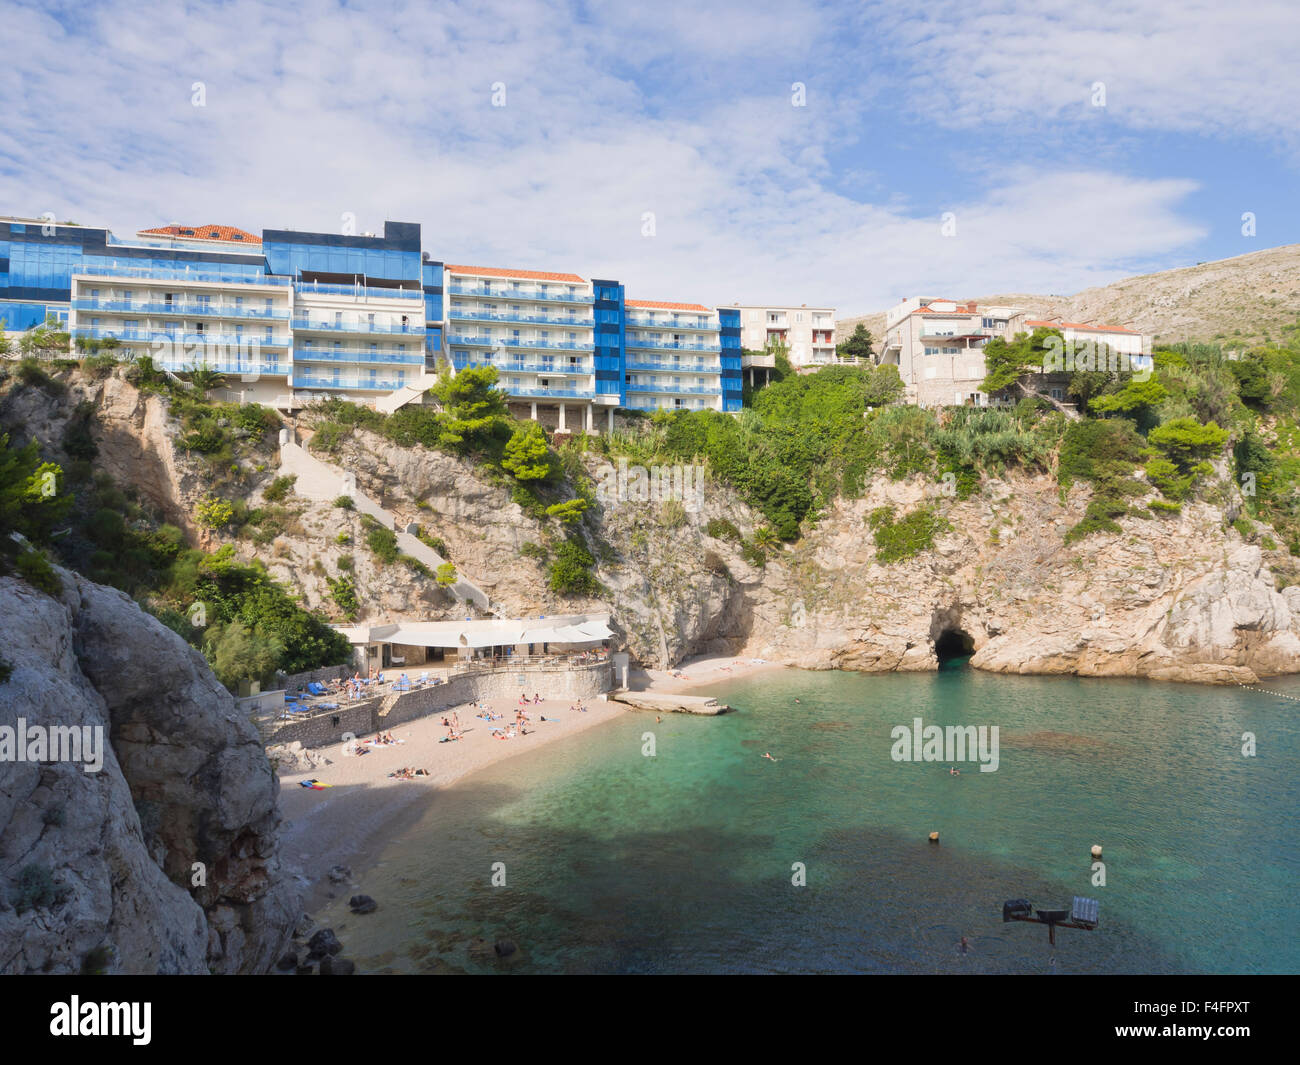 Eine kleine Bucht mit Kiesstrand und steilen Klippen, dalmatinische Küste bei seiner malerischsten, Hotel Bellevue, Dubrovnik Kroatien Stockfoto